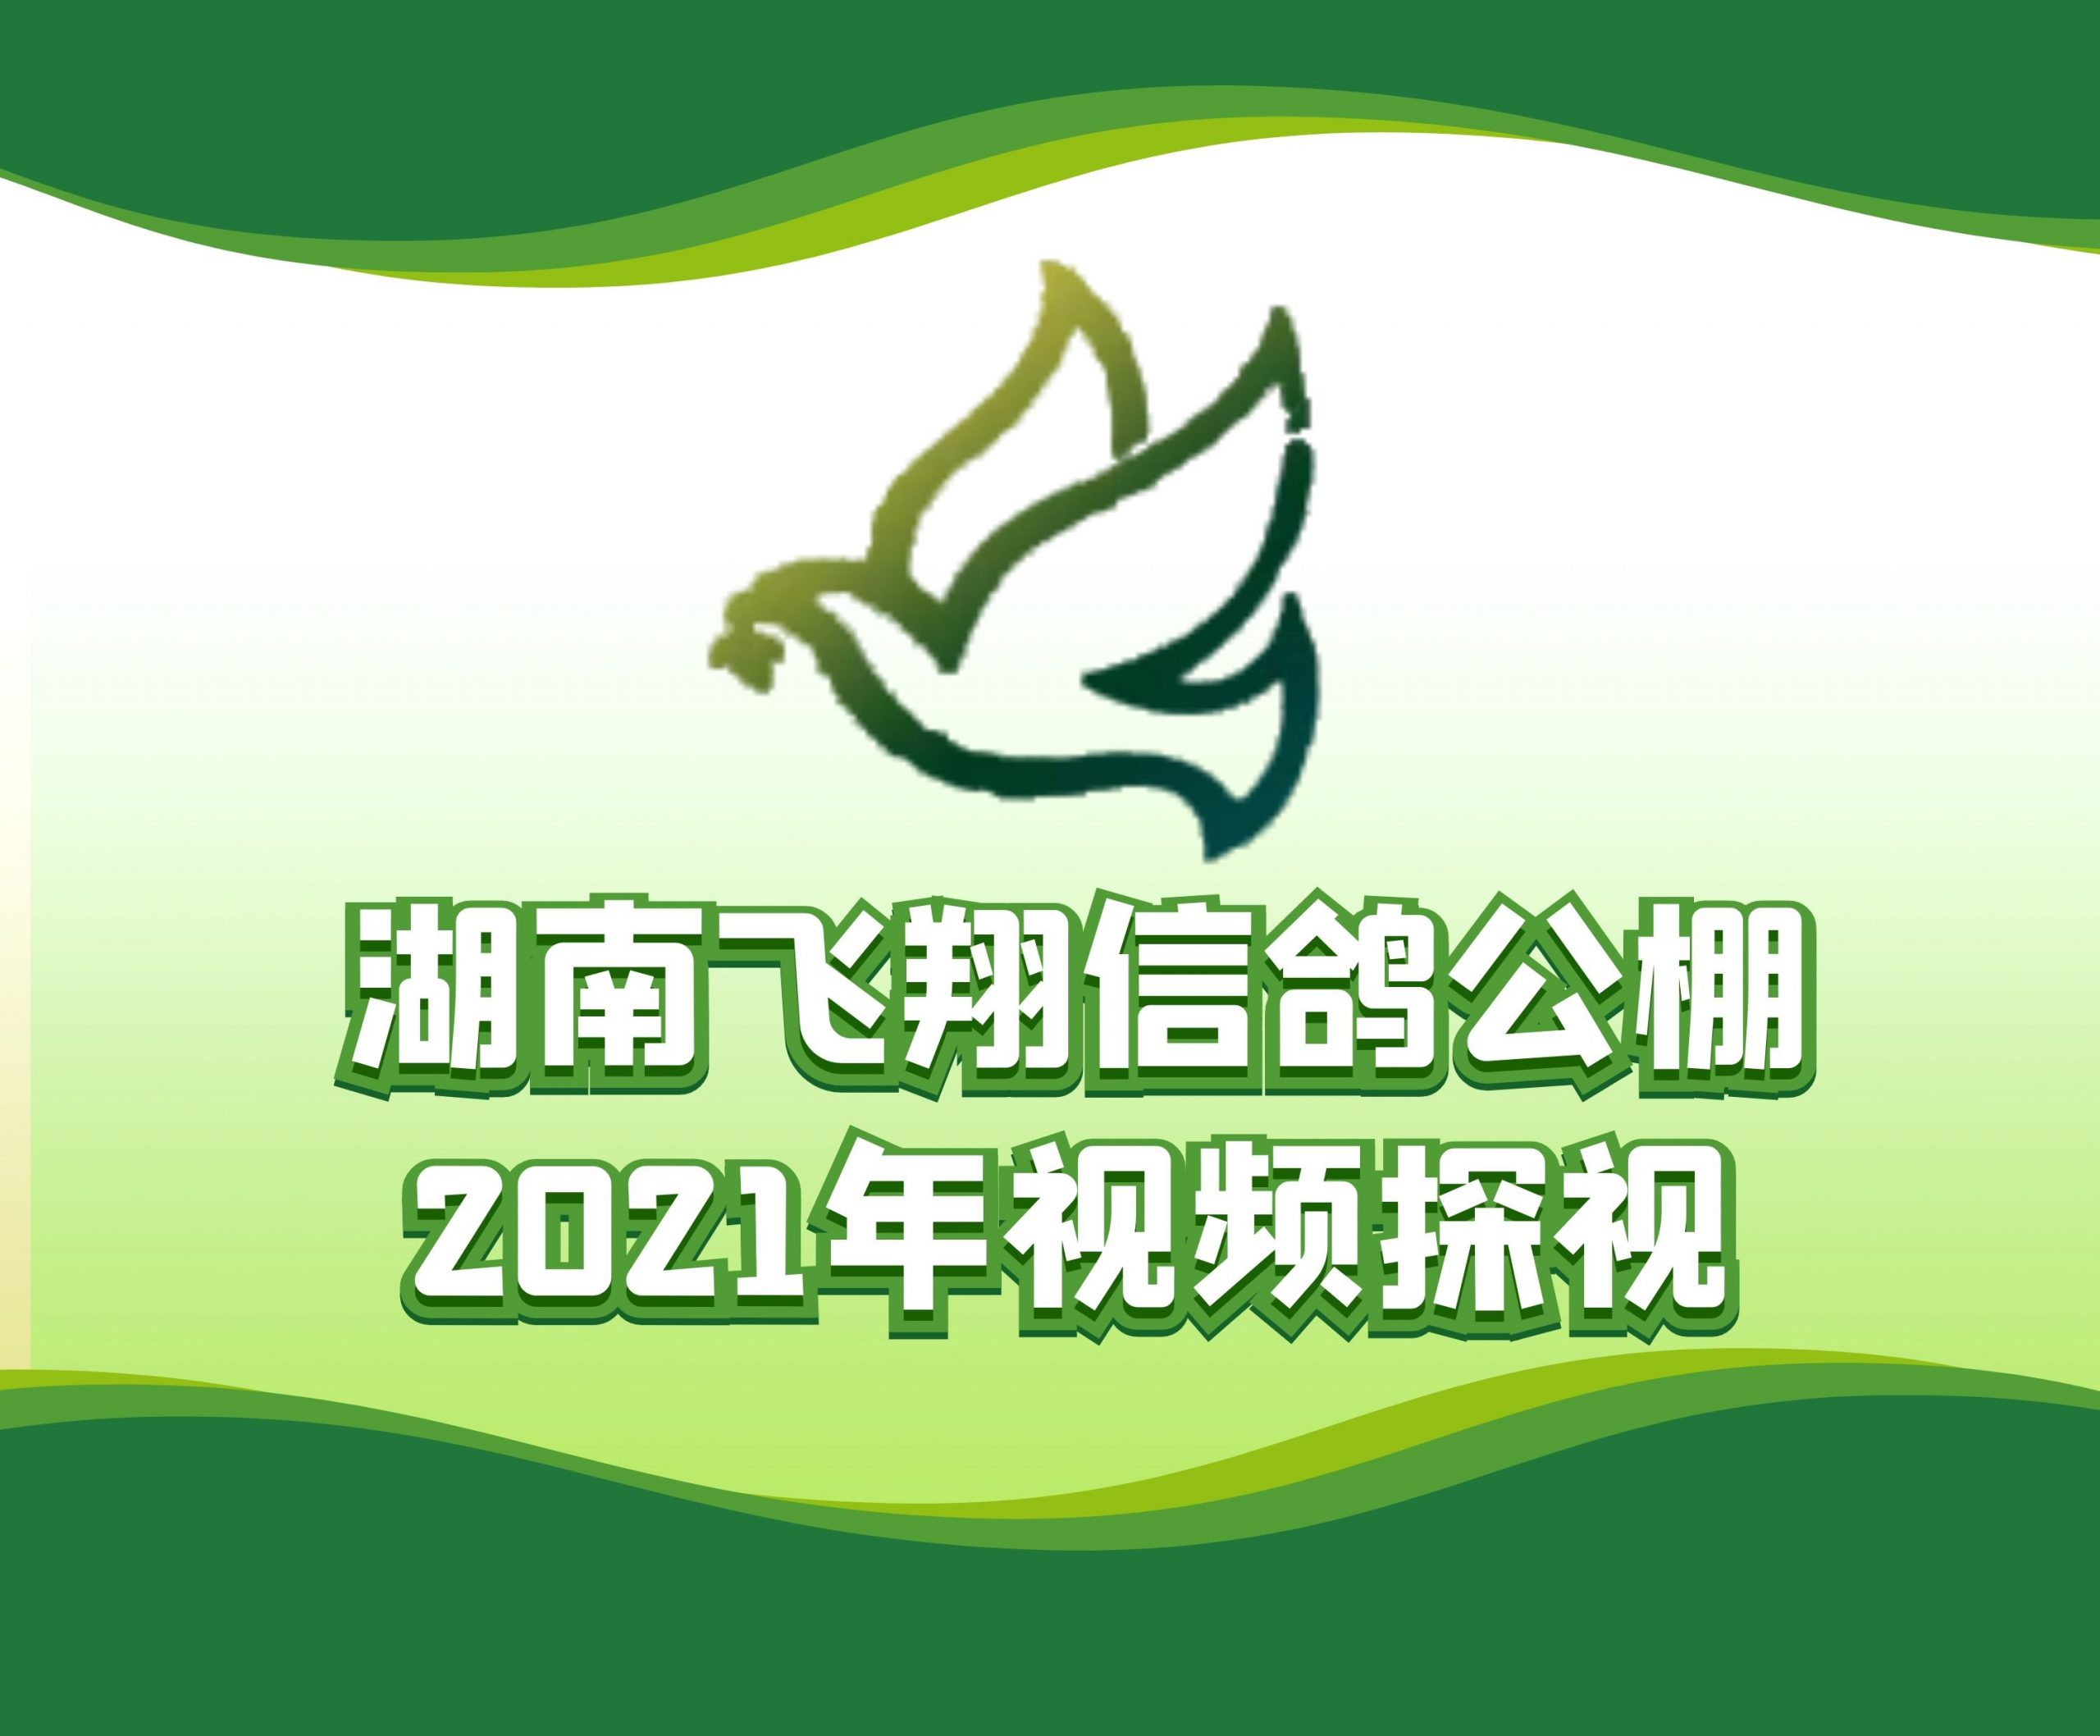 腾逹鸽业-谭文辉-2021-32-0677350